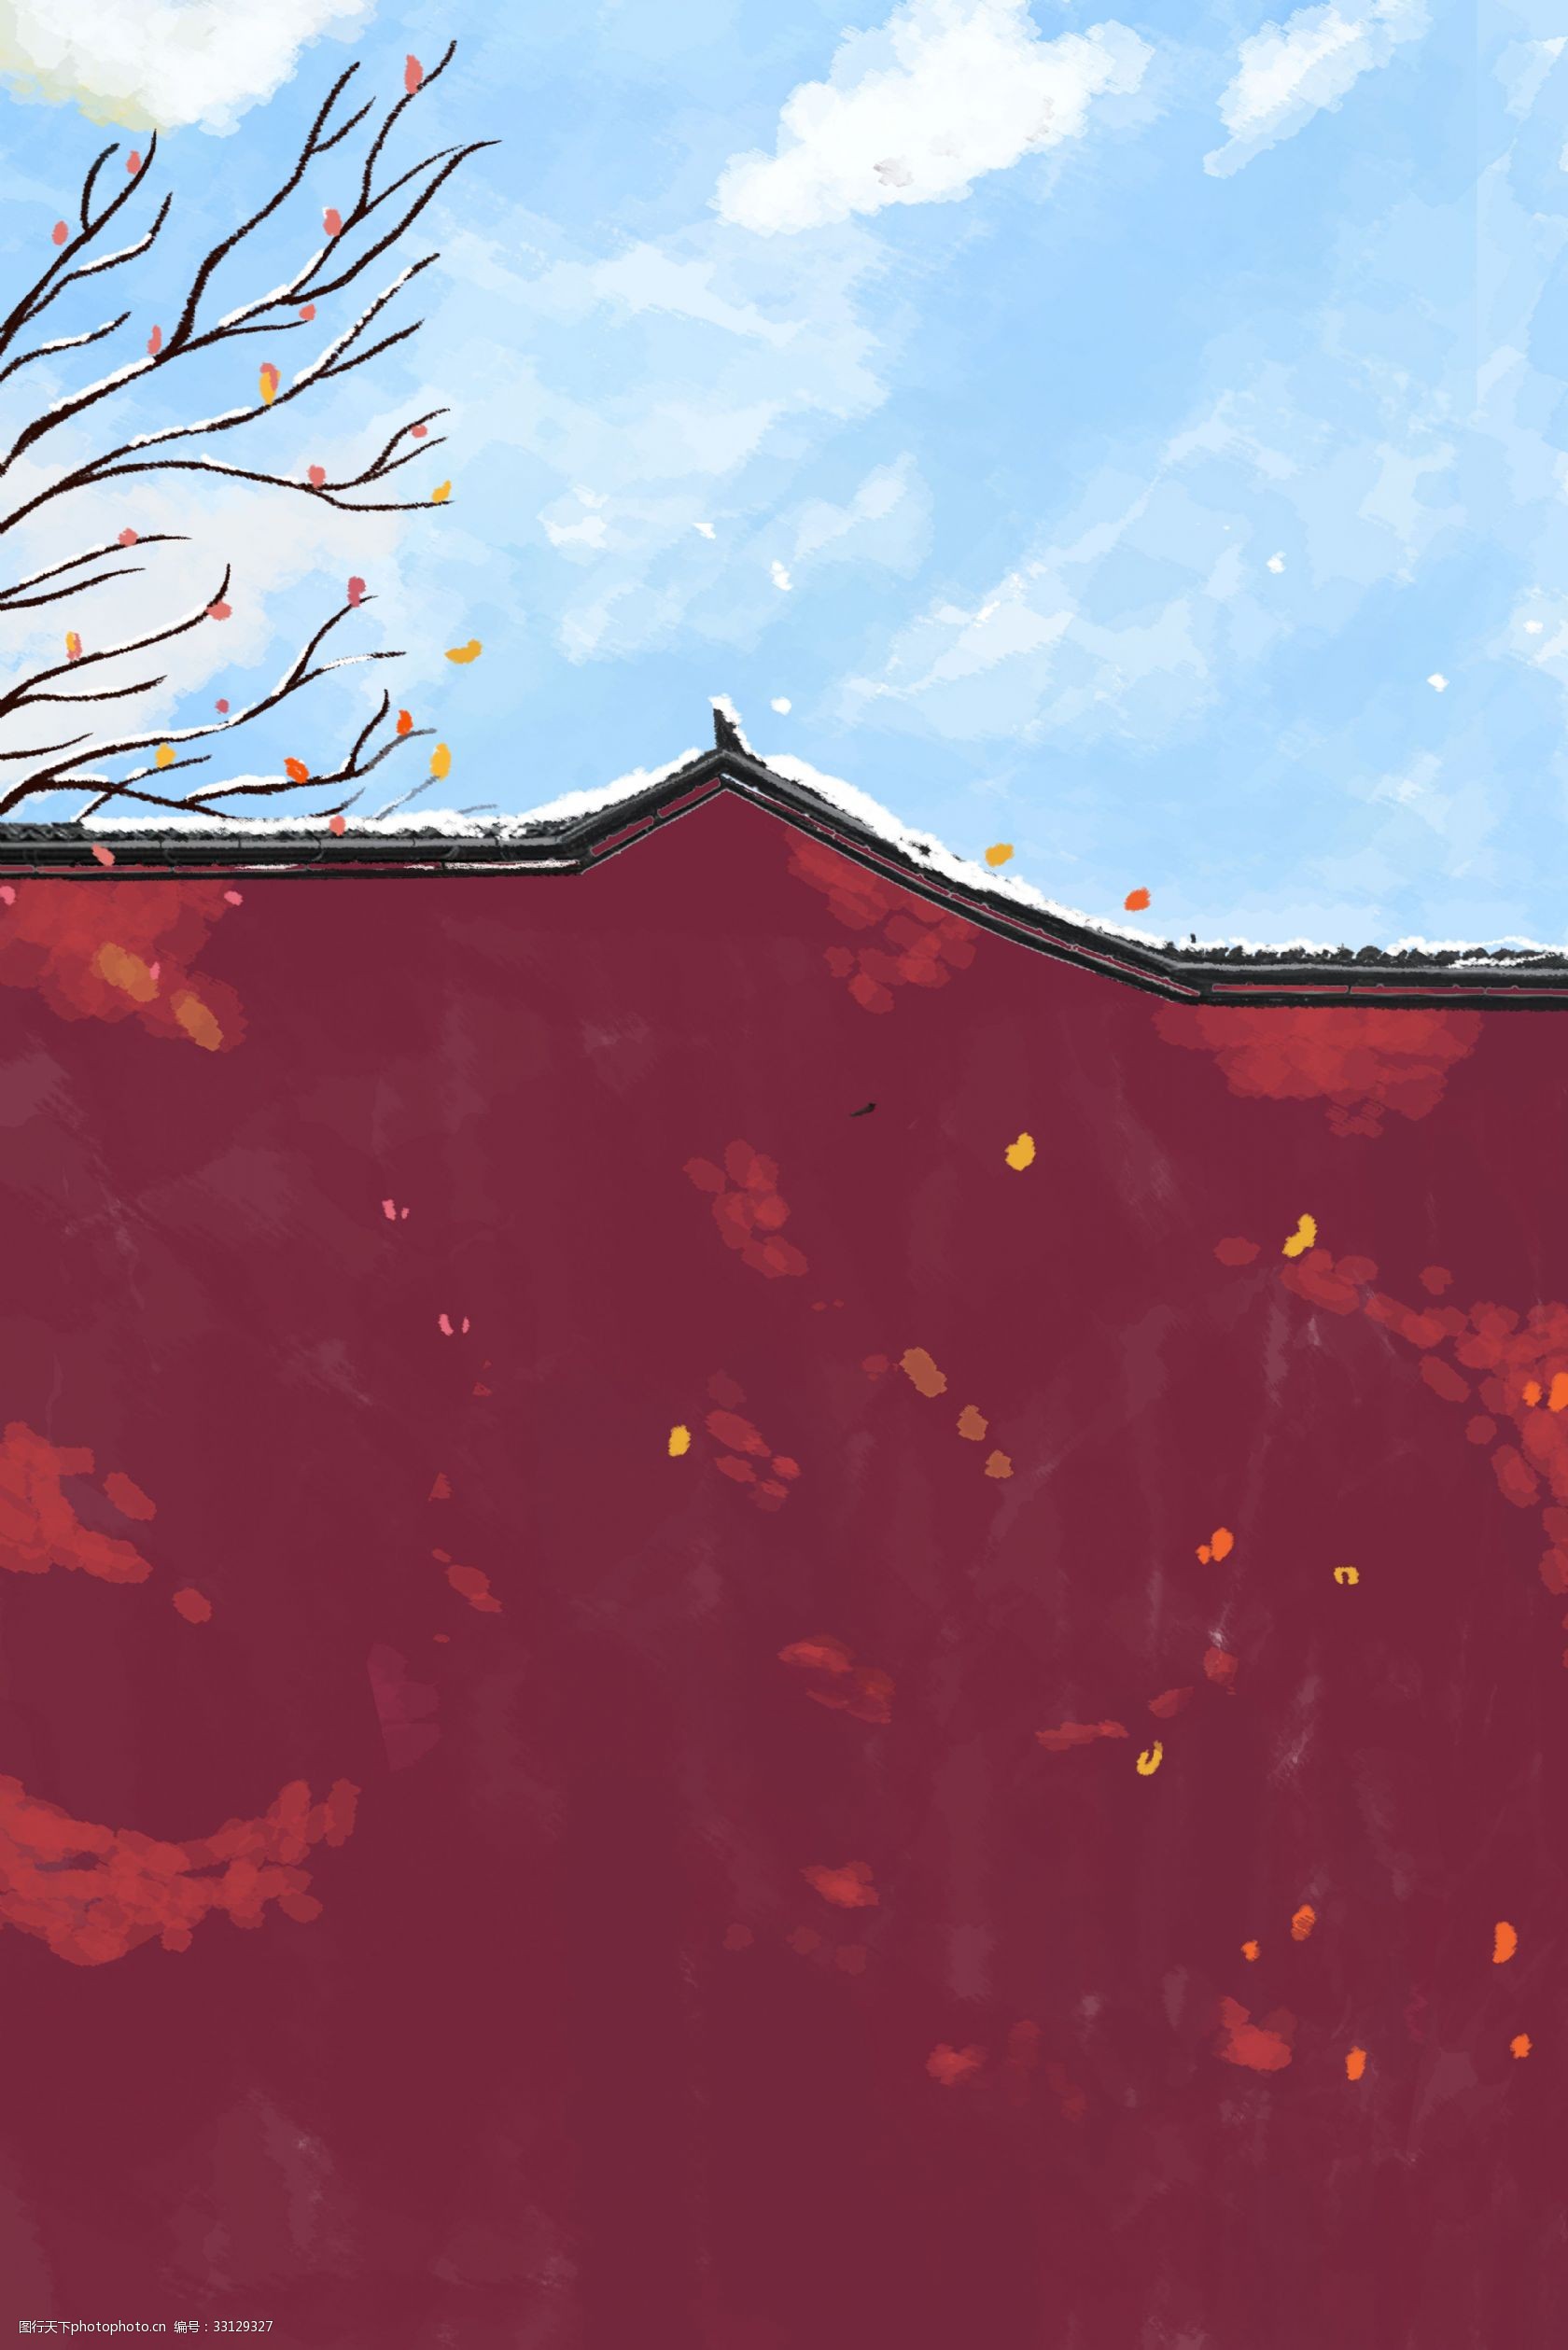 冬日 唯美 下雪 城墙 中国风 雪景 古风 古典 自然 落叶 梦幻